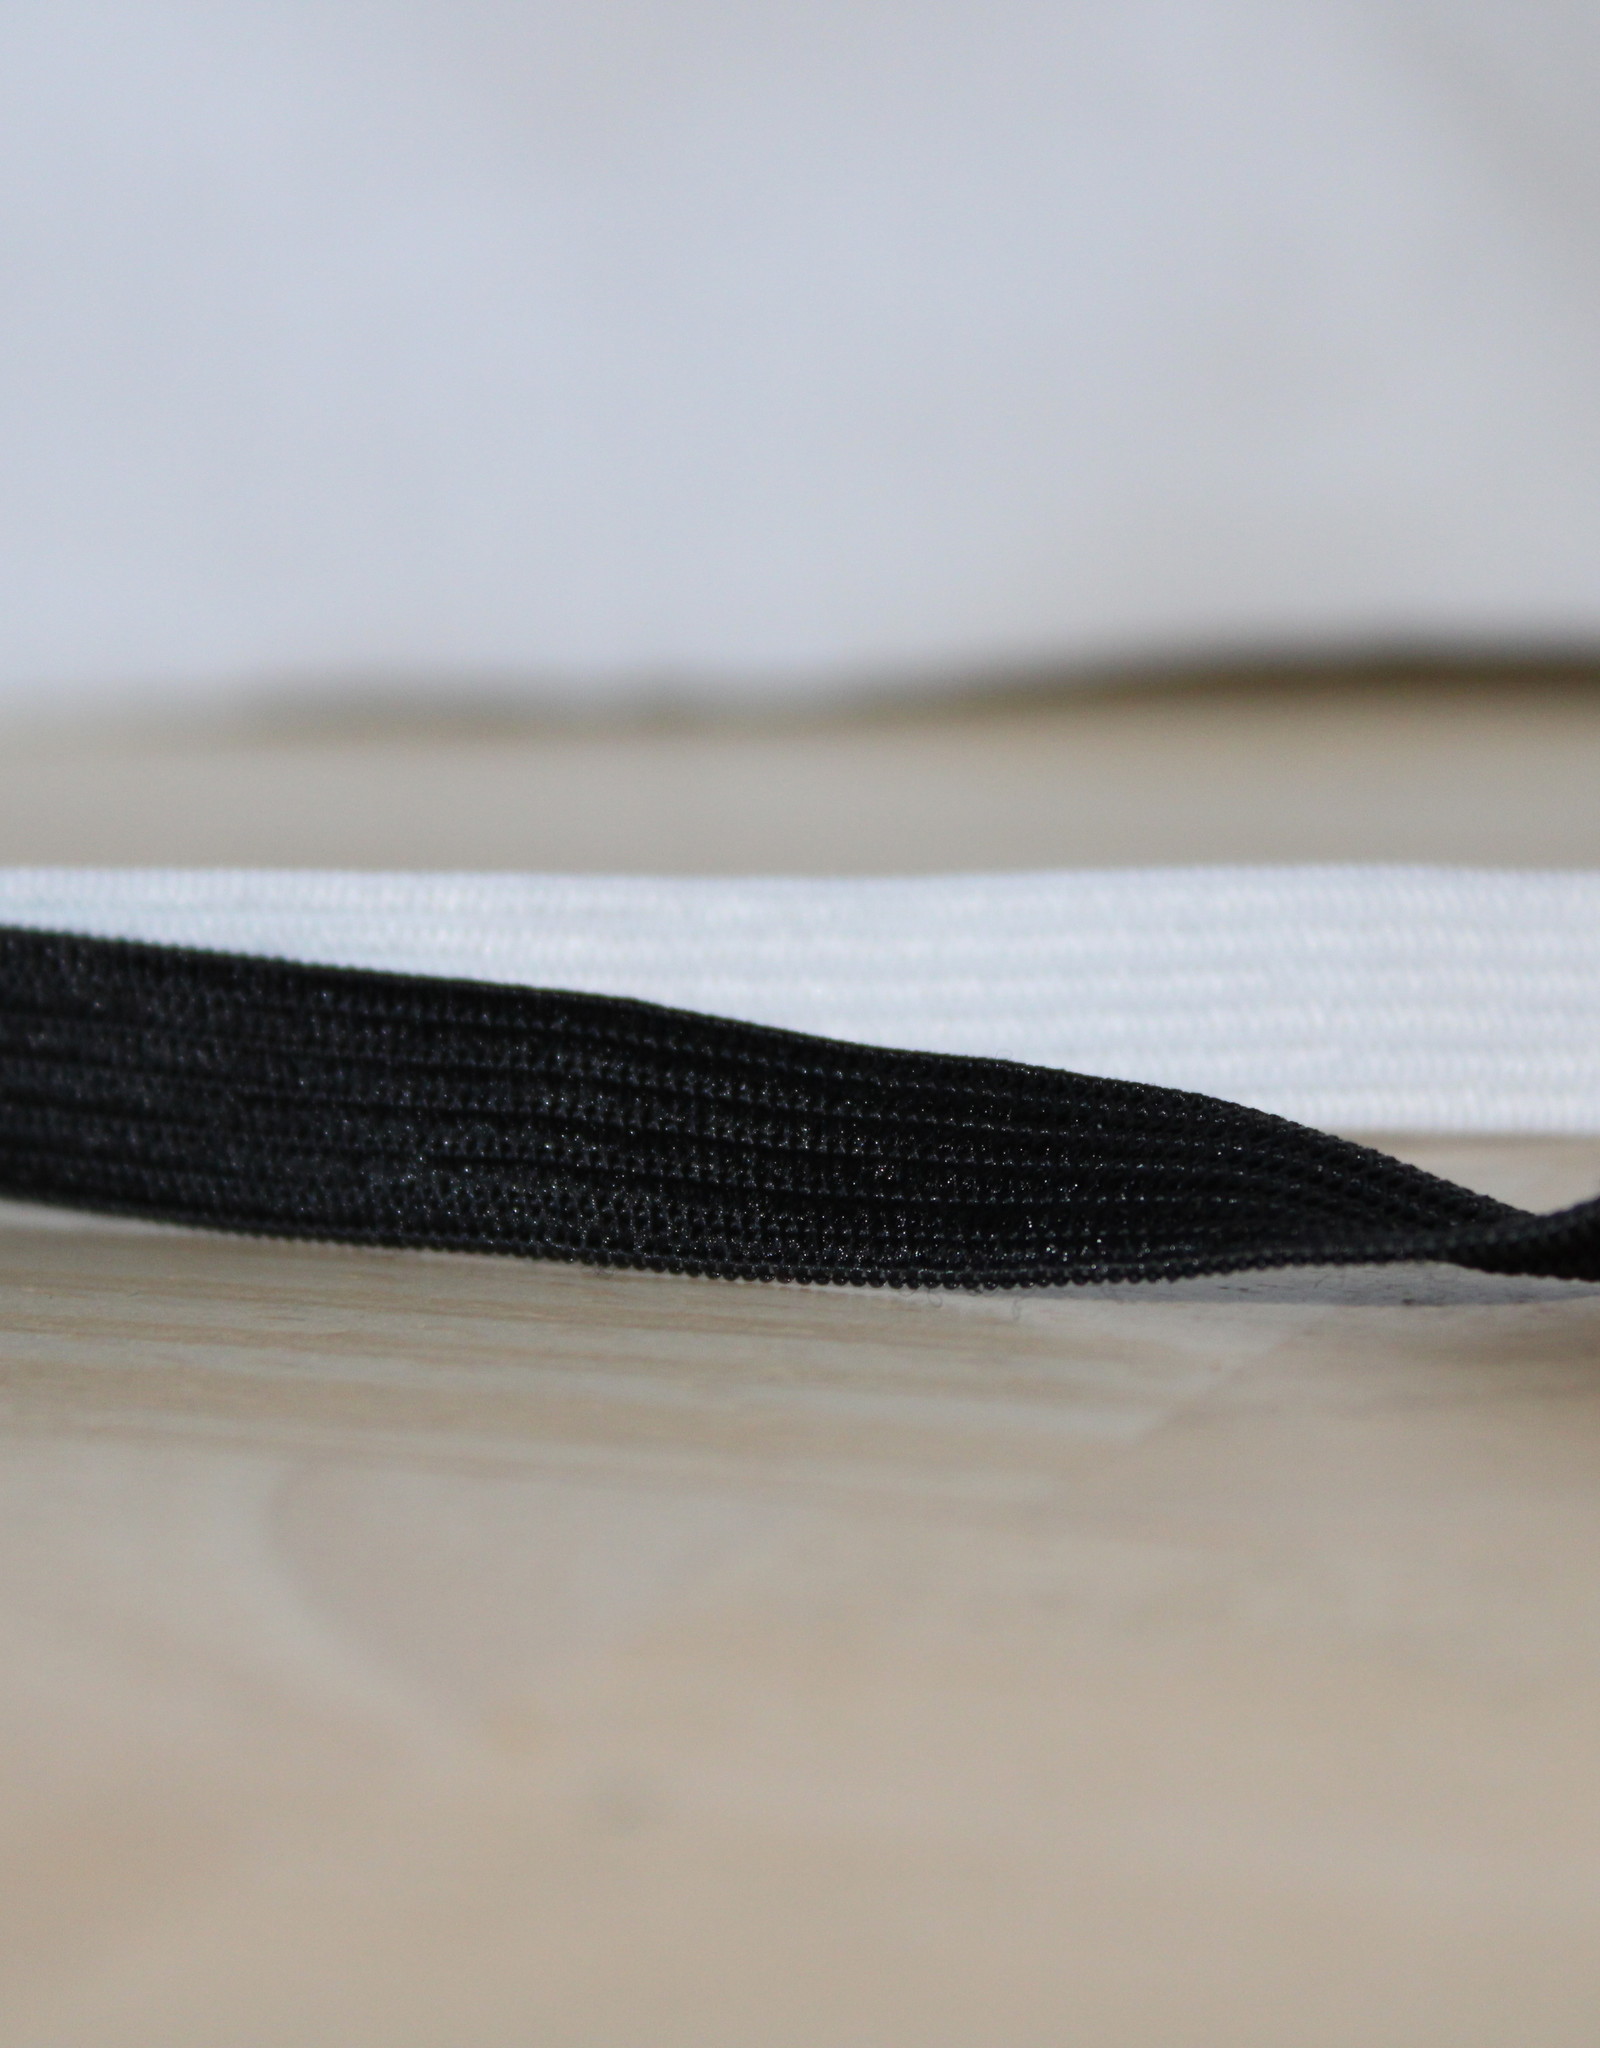 Standaard elastiek 1,5cm zwart